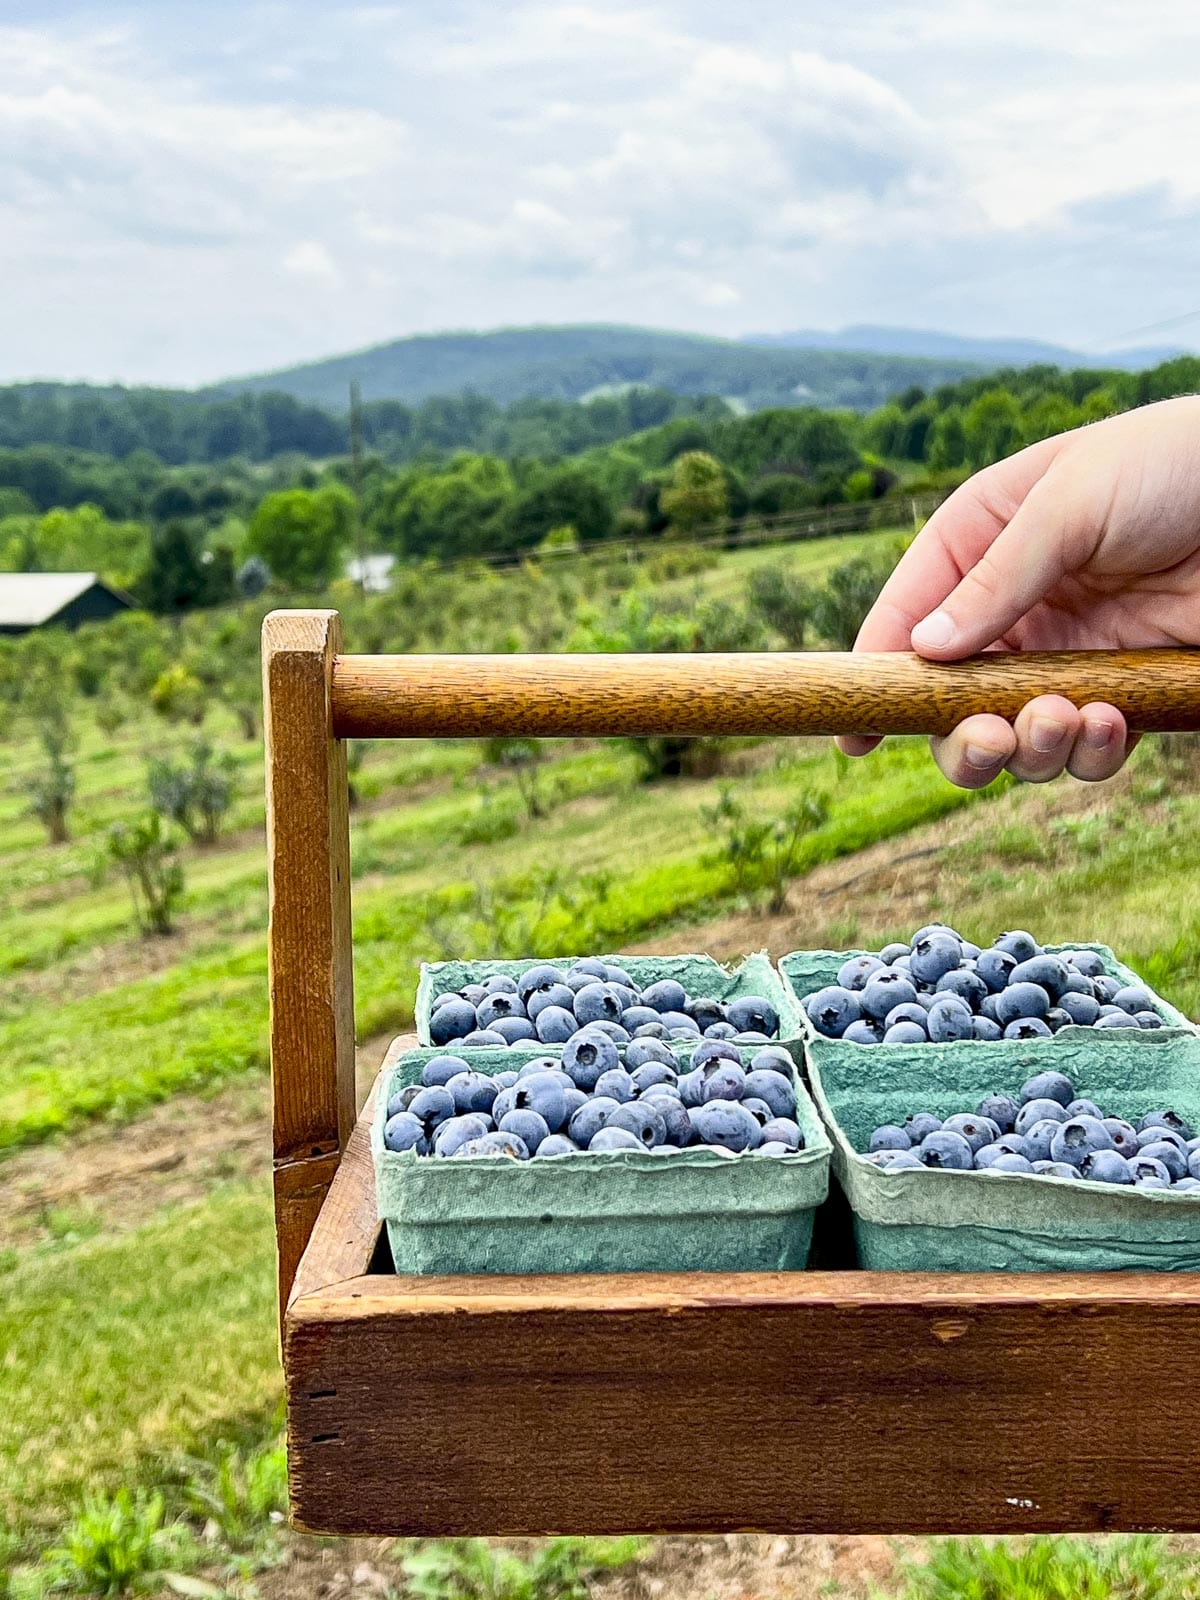 Basket of freshly picked blueberries.